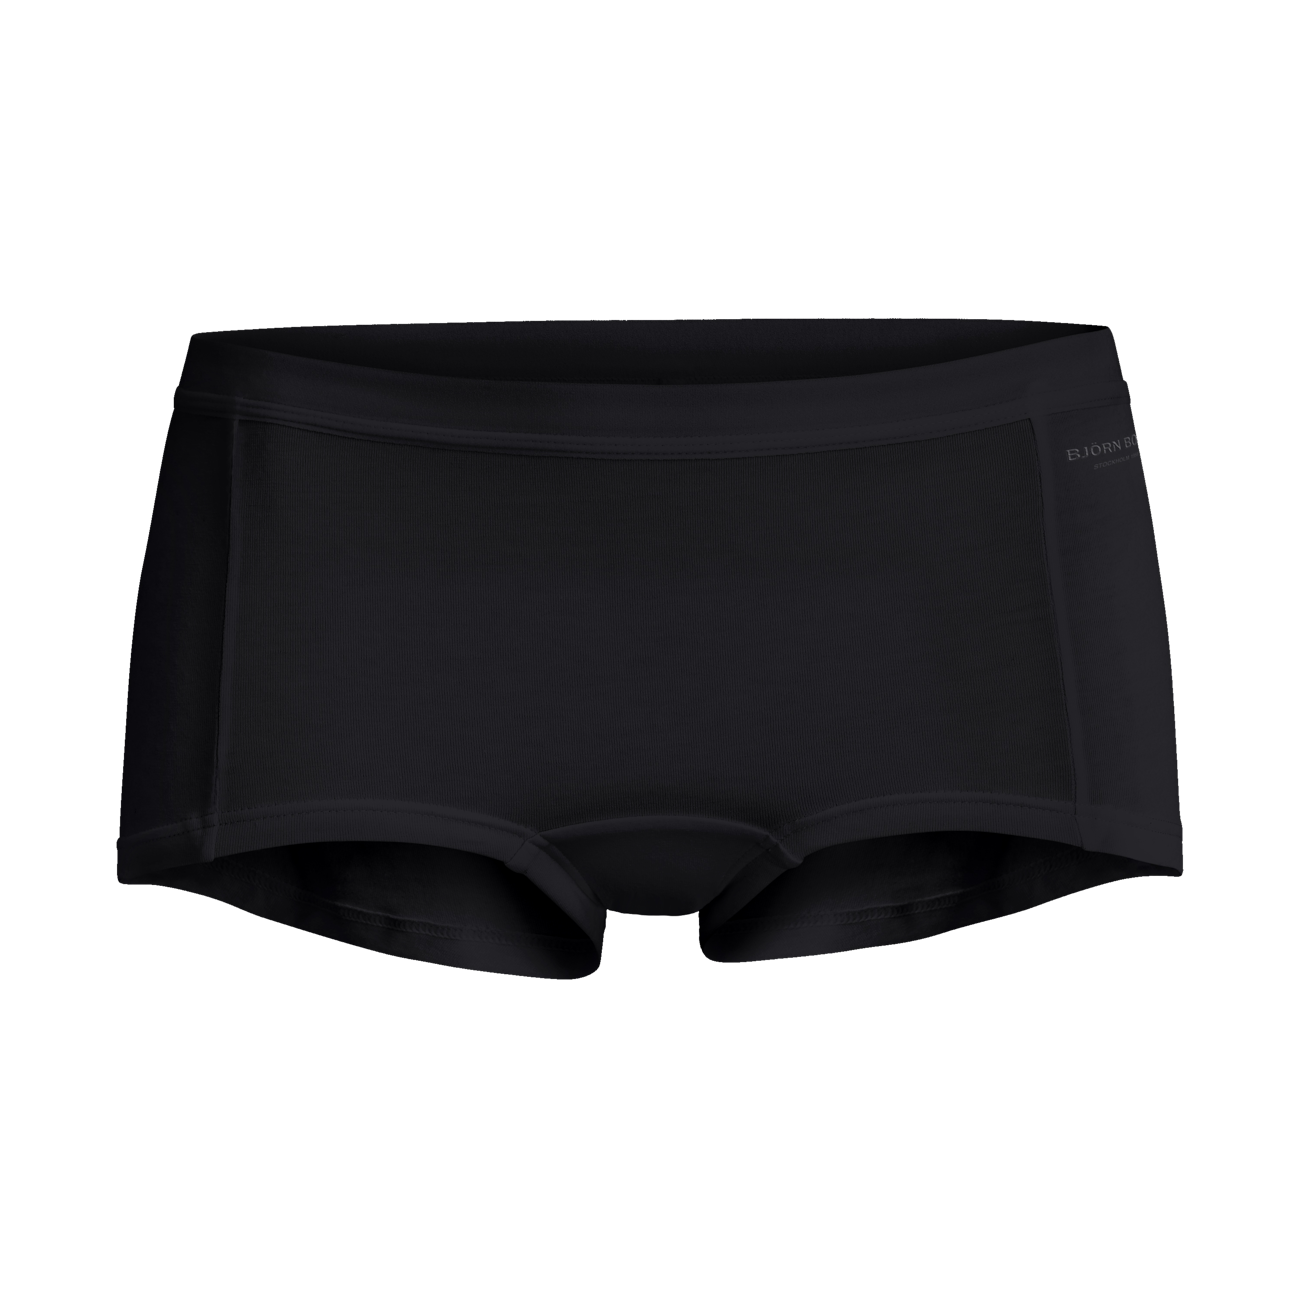 Calvin Klein Underwear HIPSTER 5 PACK - Briefs - mehrfarbig/multi